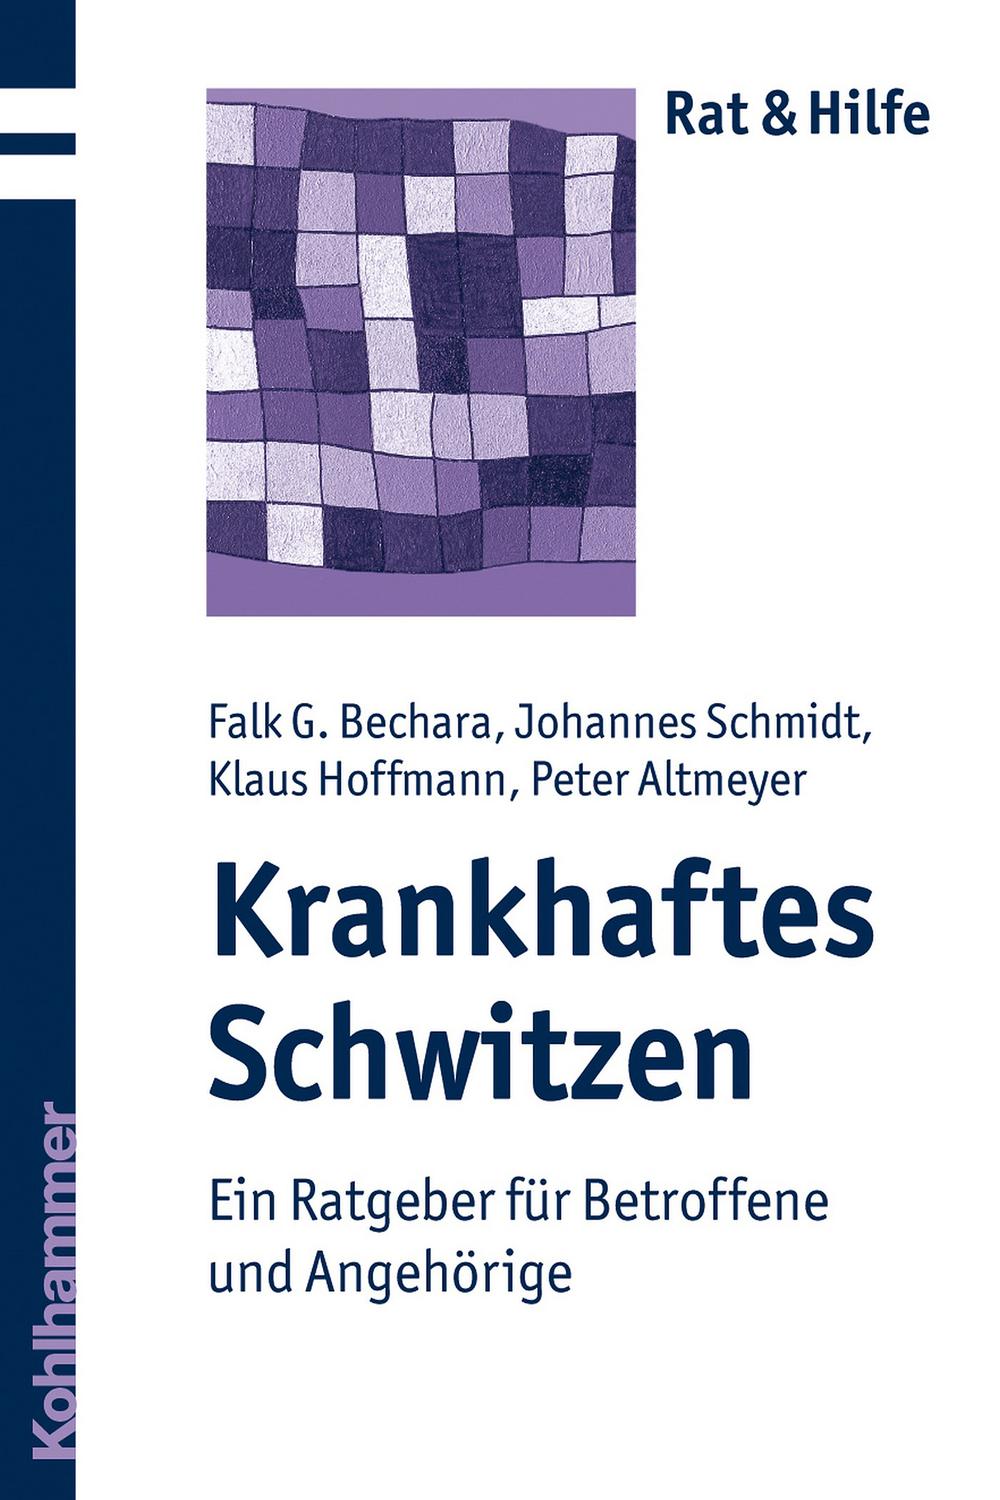 Krankhaftes Schwitzen - Falk G. Bechara, Johannes Schmidt, Klaus Hoffmann, Peter Altmeyer